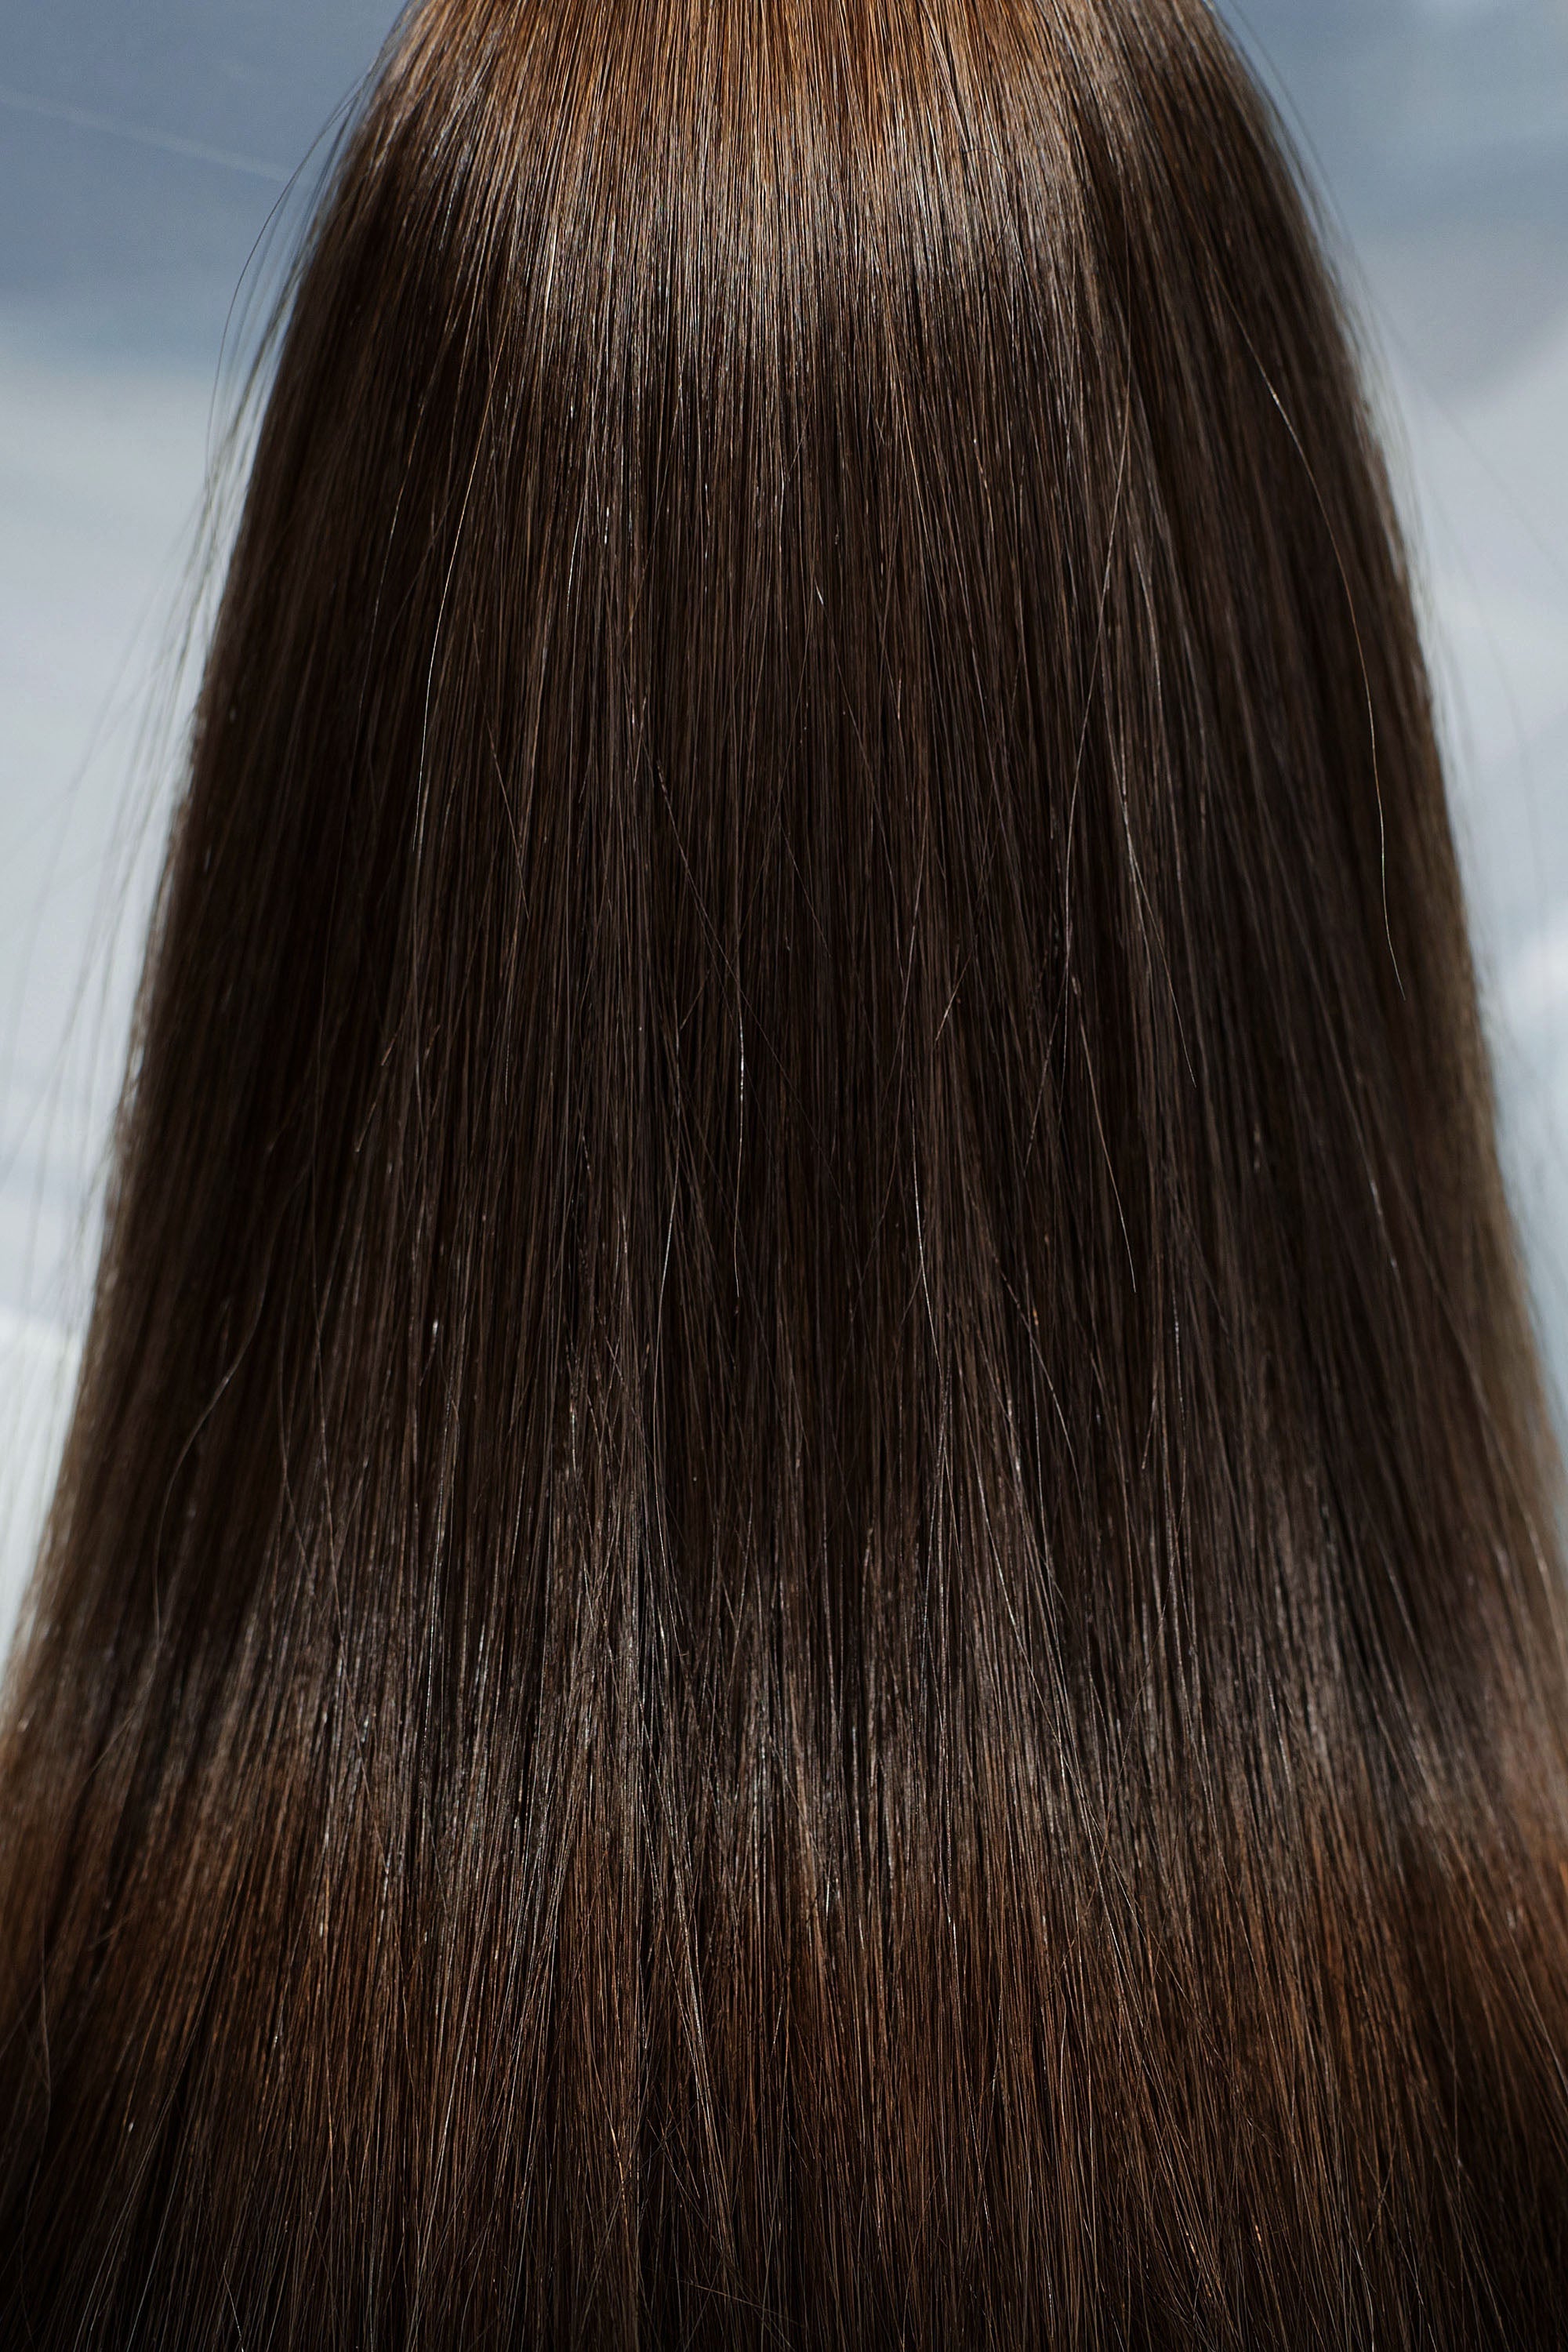 Behair professional Bulk hair "Premium" 26" (65cm) Natural Straight Light Brown #4 - 25g hair extensions